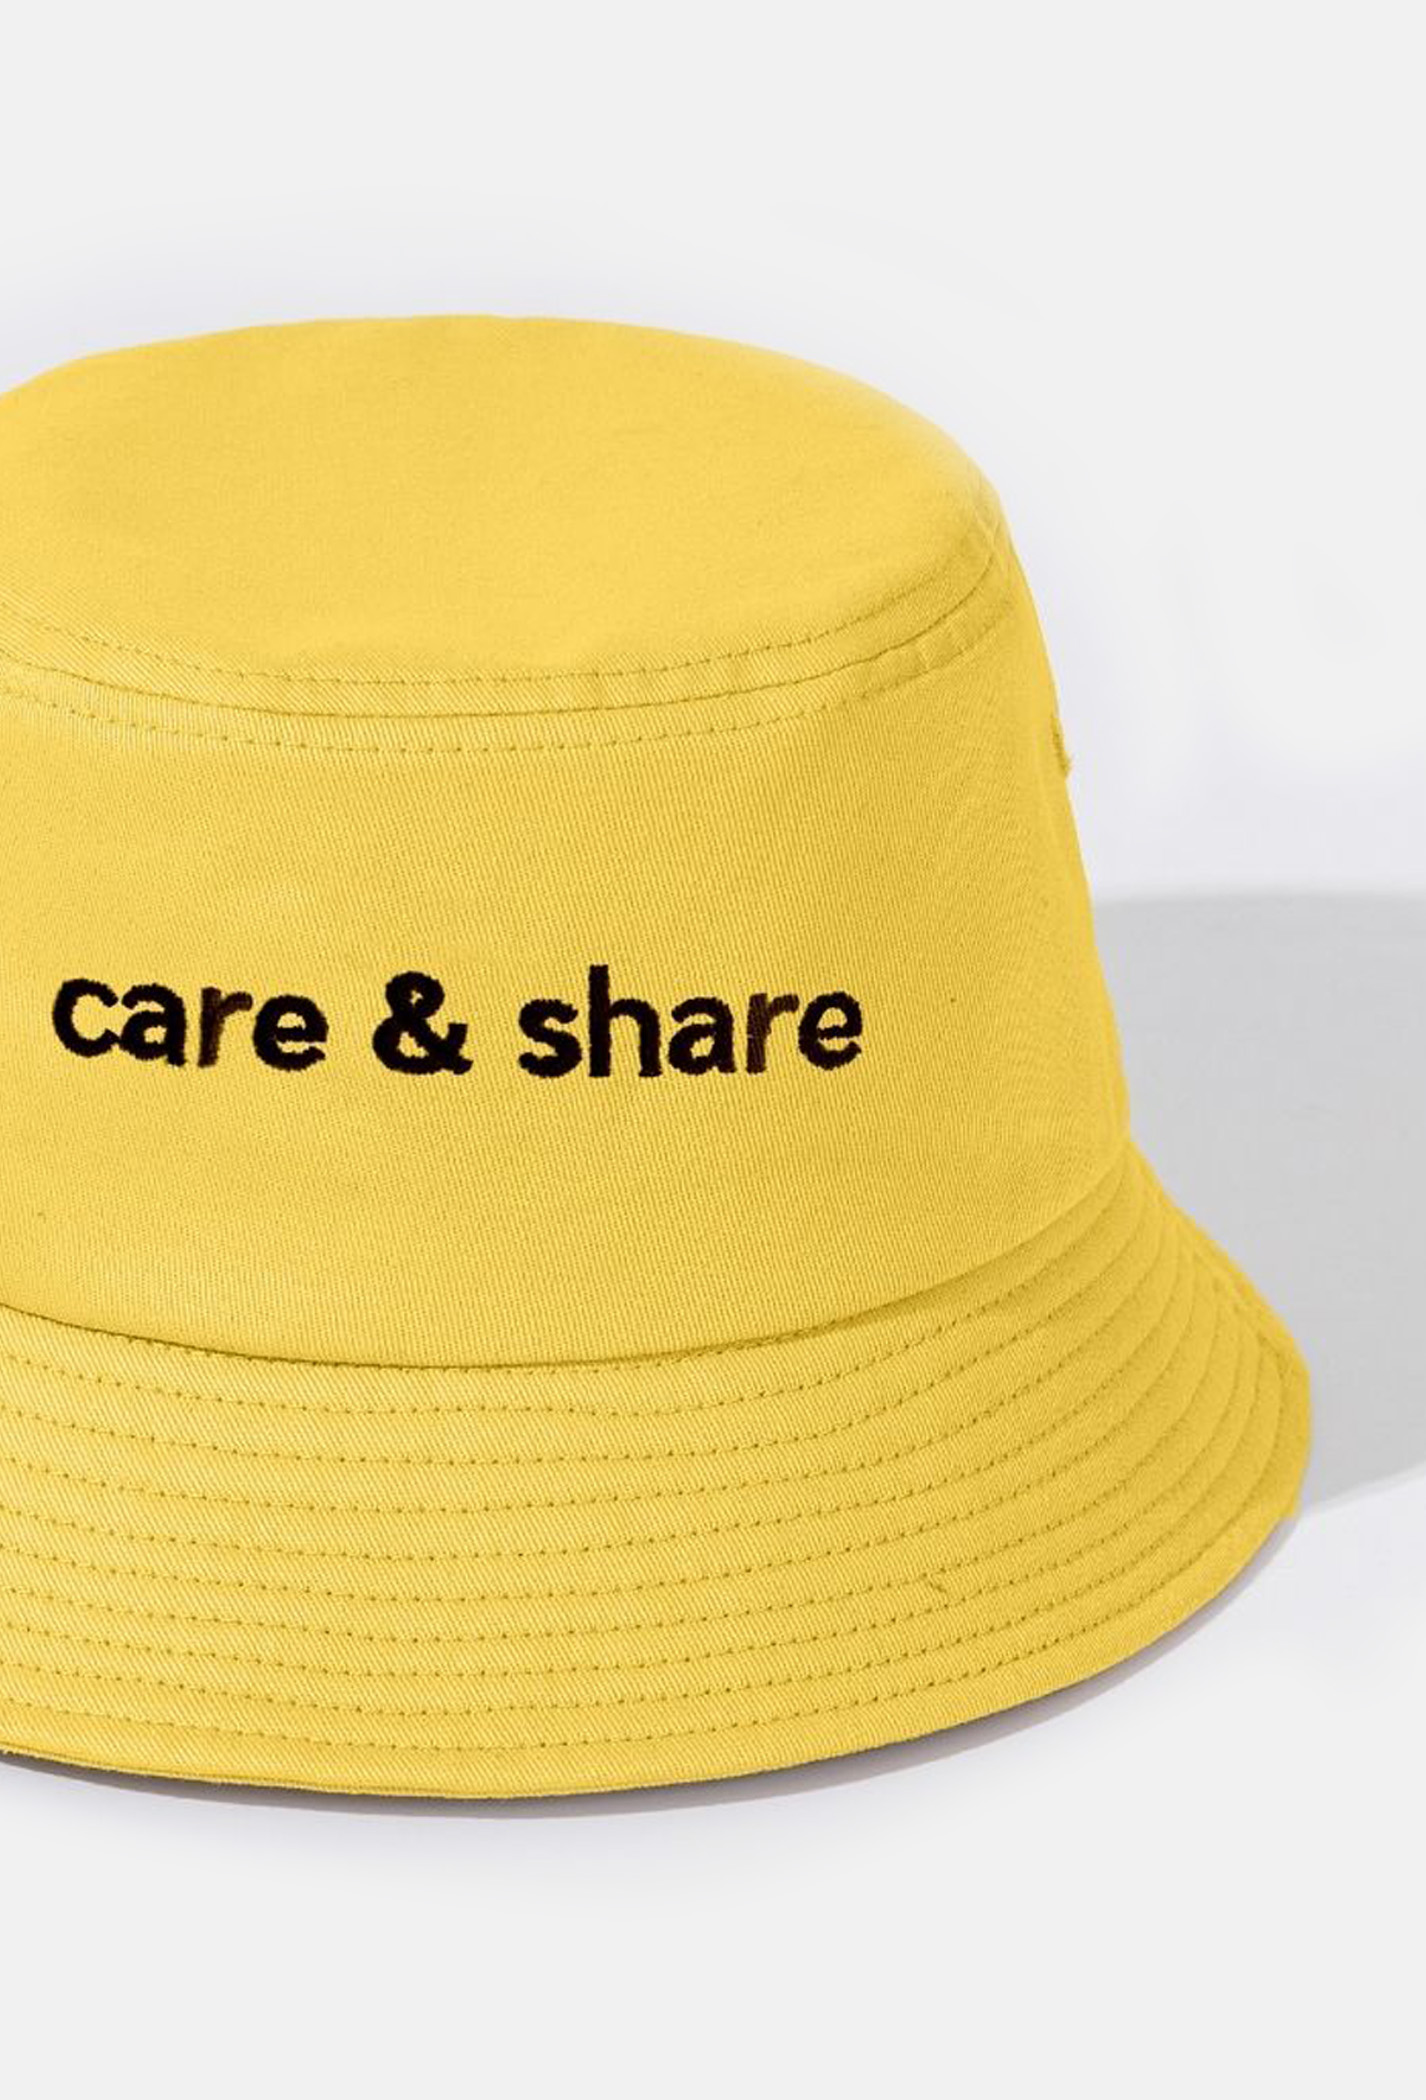 Mũ/Nón Bucket Hat thêu Care & Share Typo Vàng 3